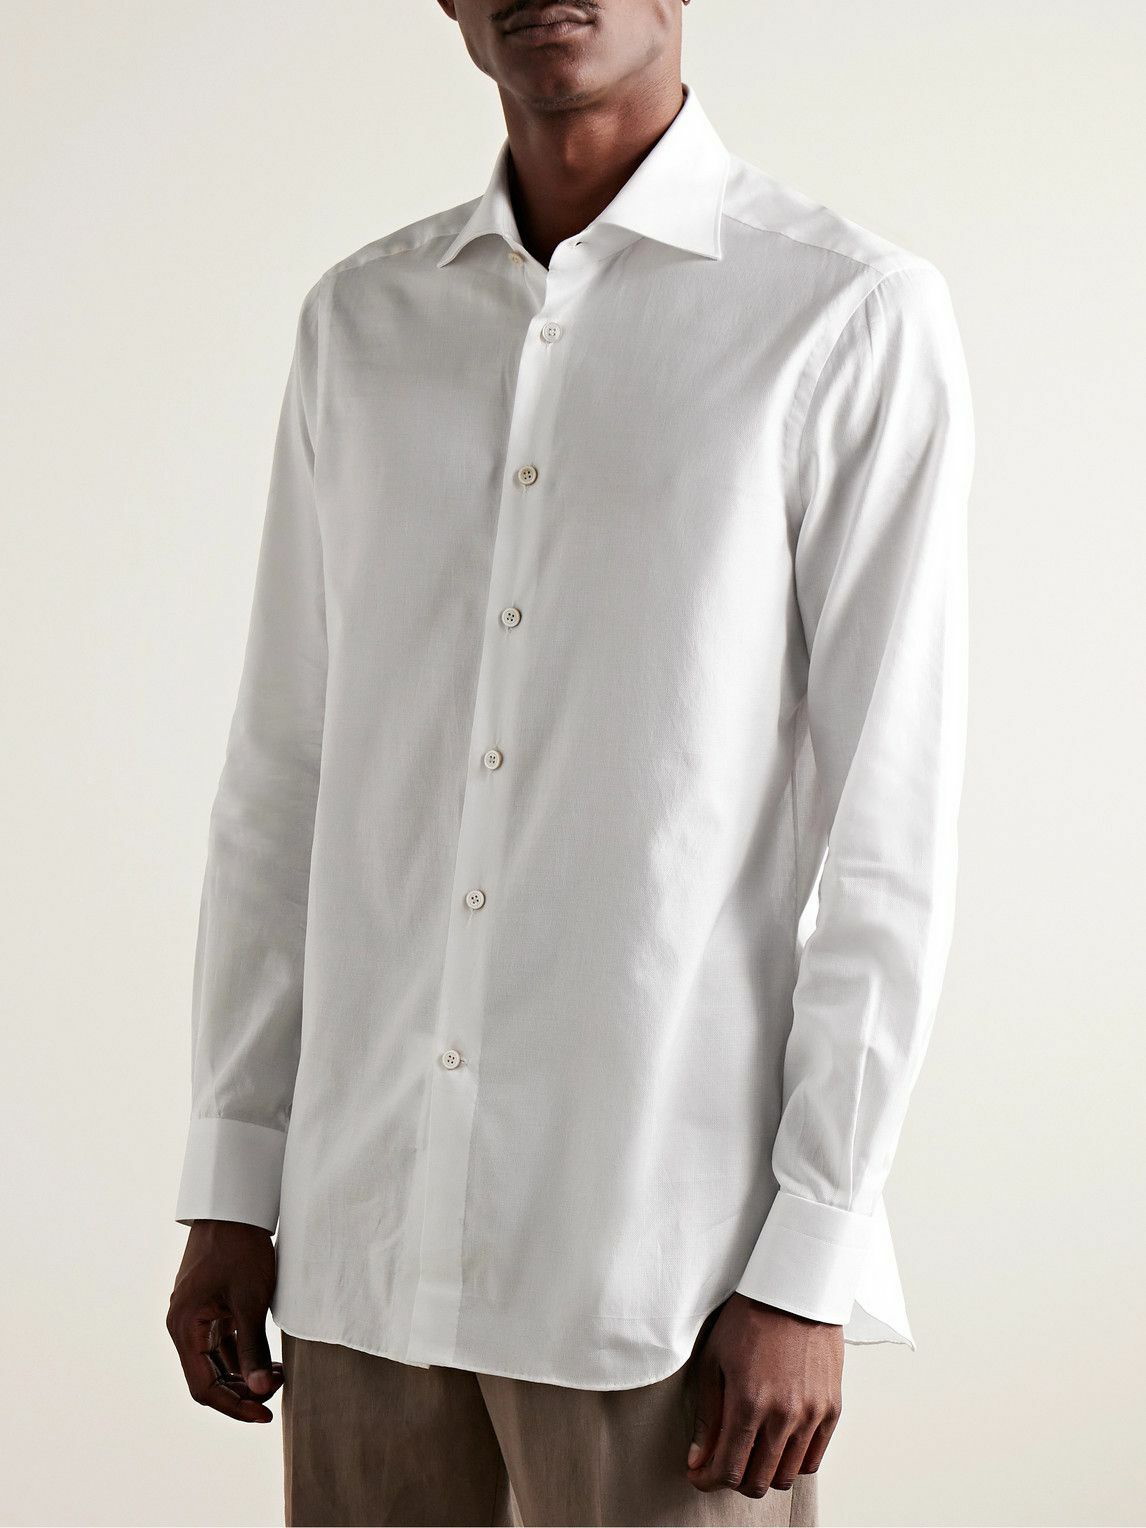 Kiton Slim Fit Dress Shirt White at